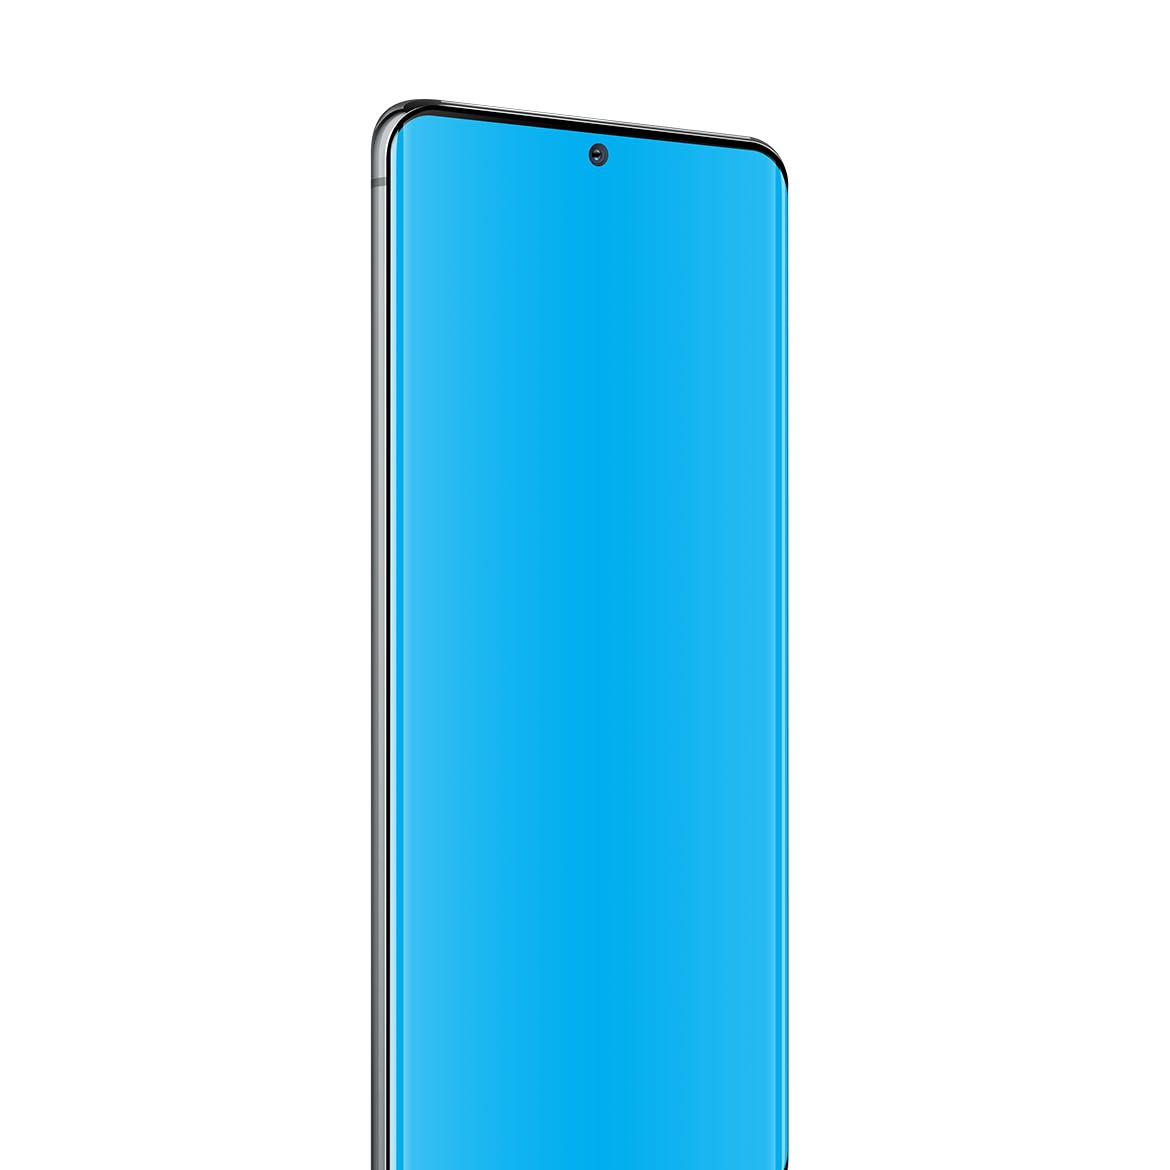 三星Galaxy S20 Ultra智能手机UI设计屏幕预览蚂蚁素材精选样机 S20 Ultra Layered PSD Mockups插图(3)